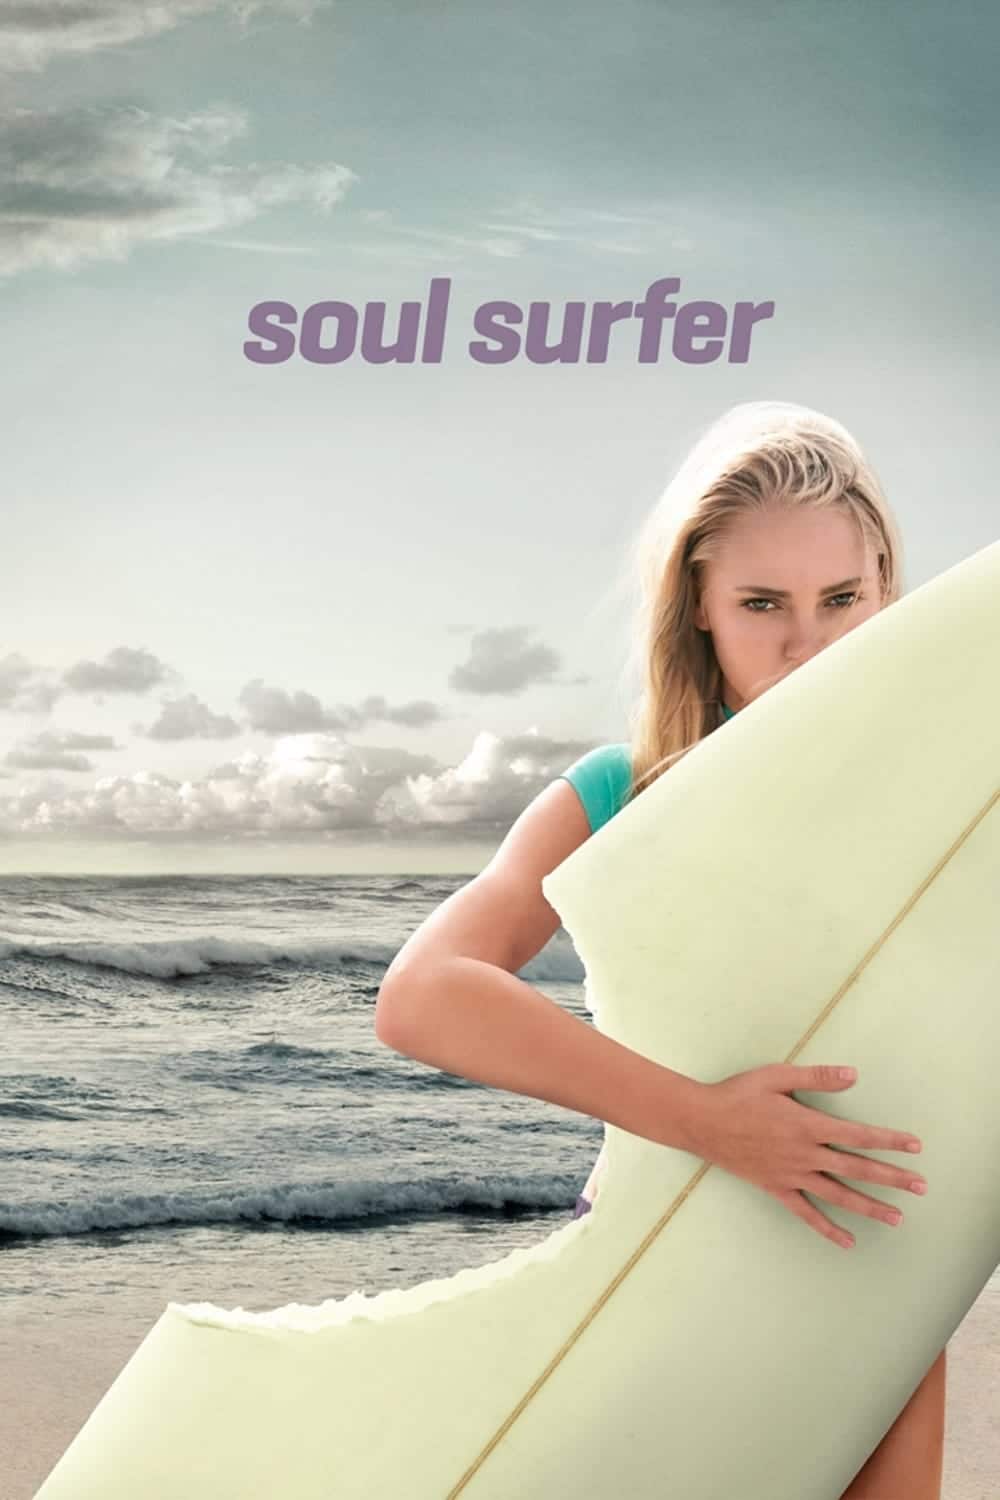 Plakat von "Soul Surfer"